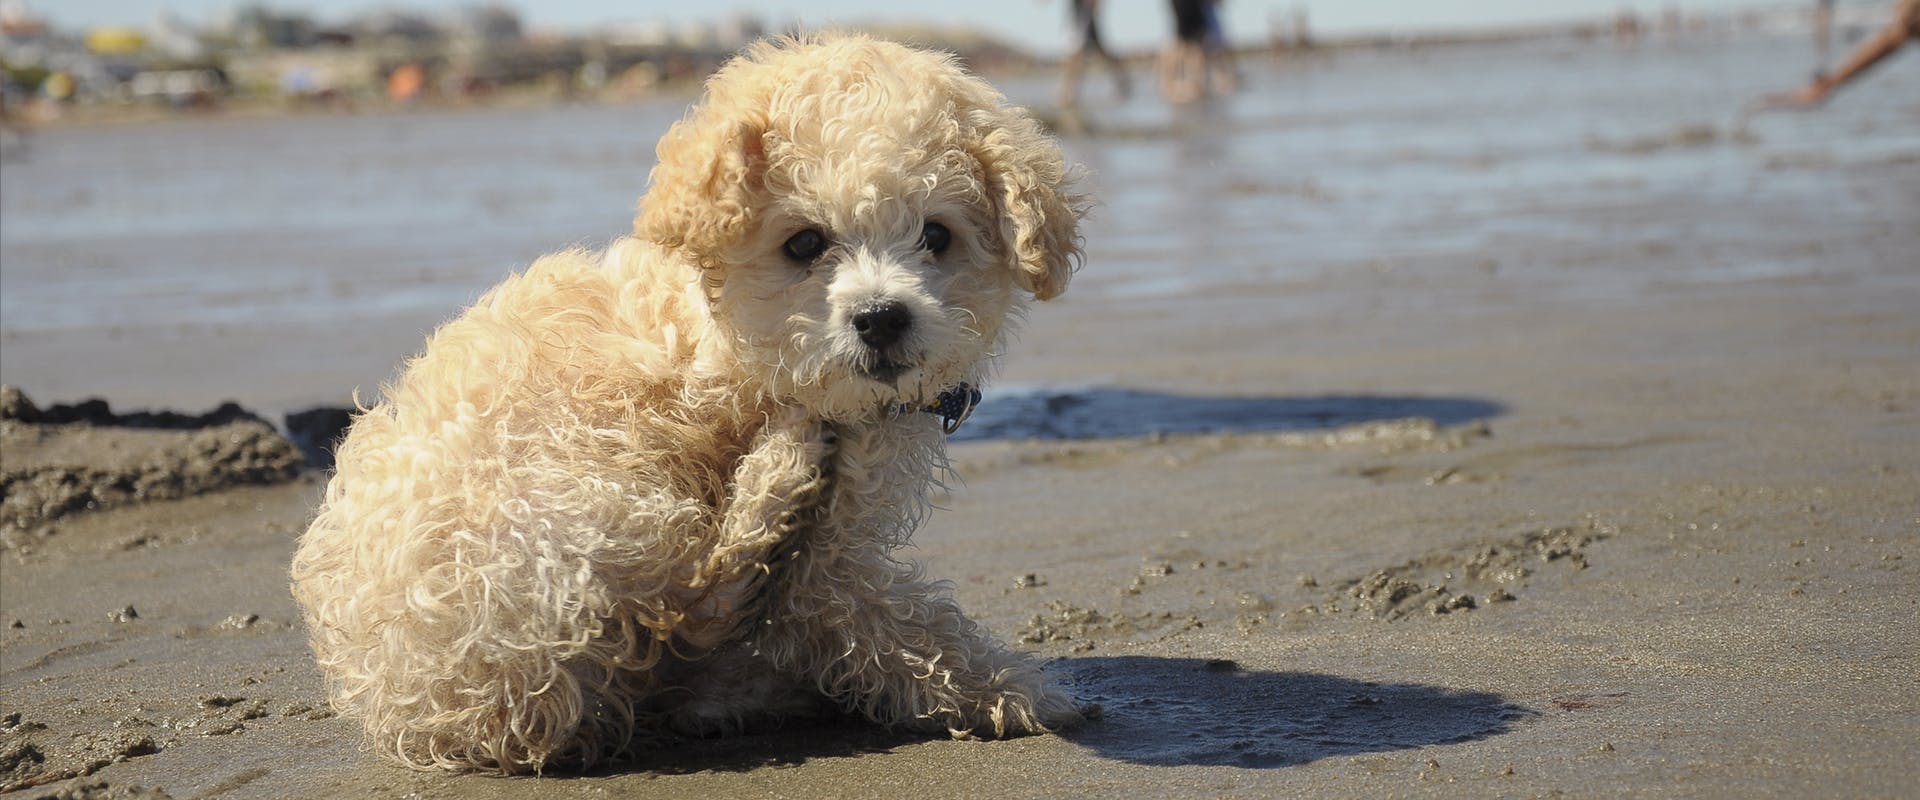 A cute Poochon puppy at the beach